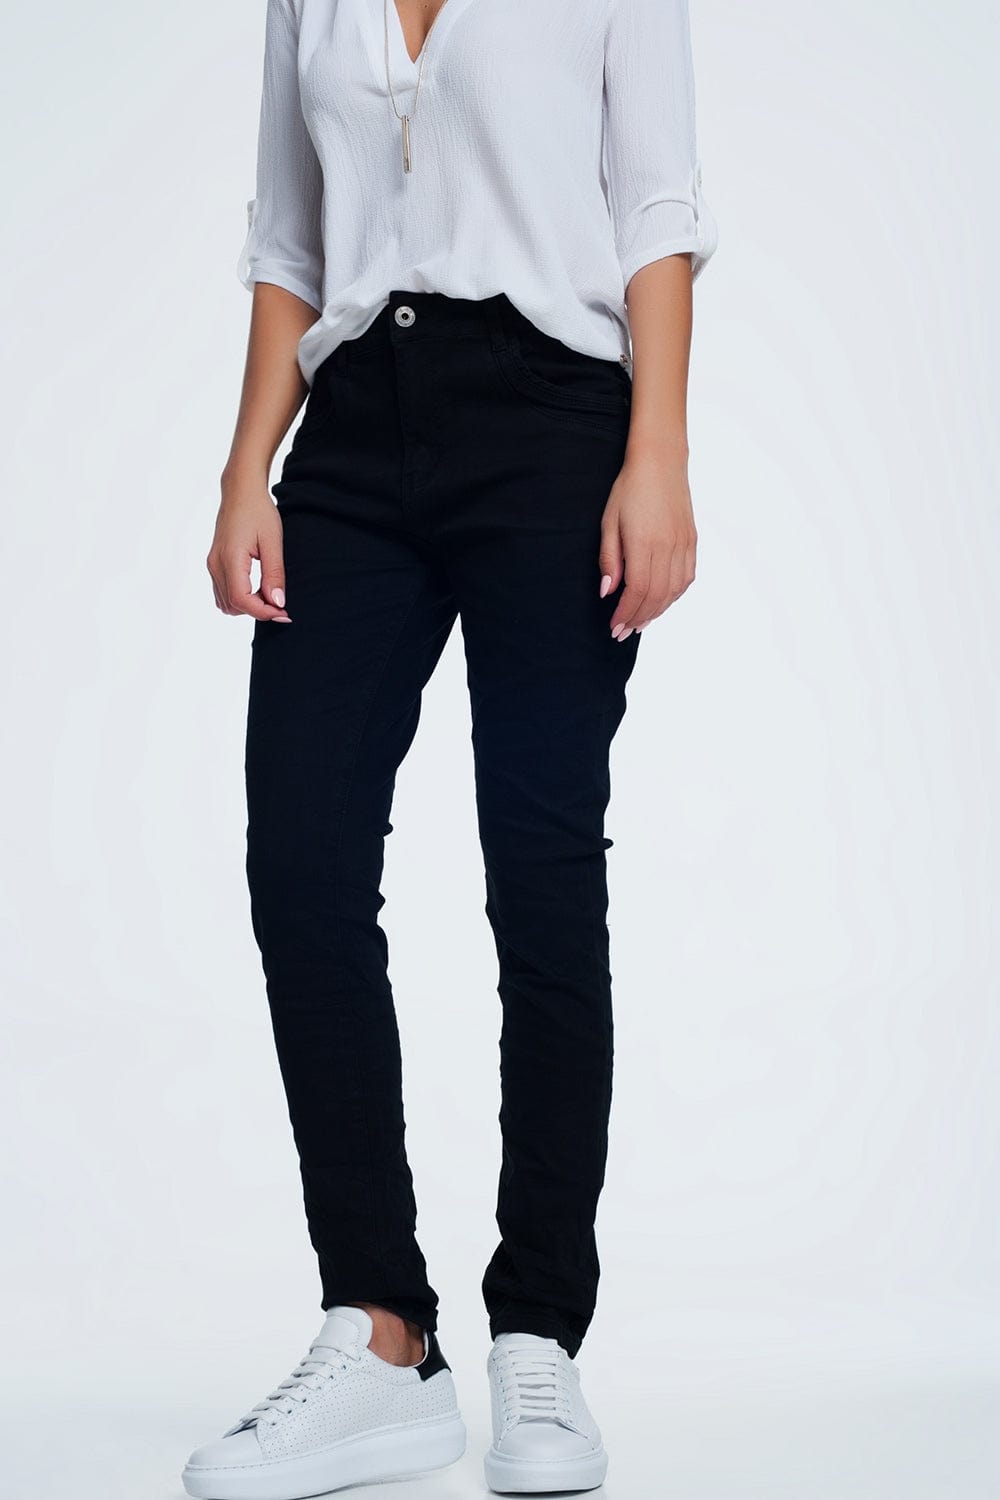 Q2 Women's Jean Drop Crotch Skinny Jean in Black